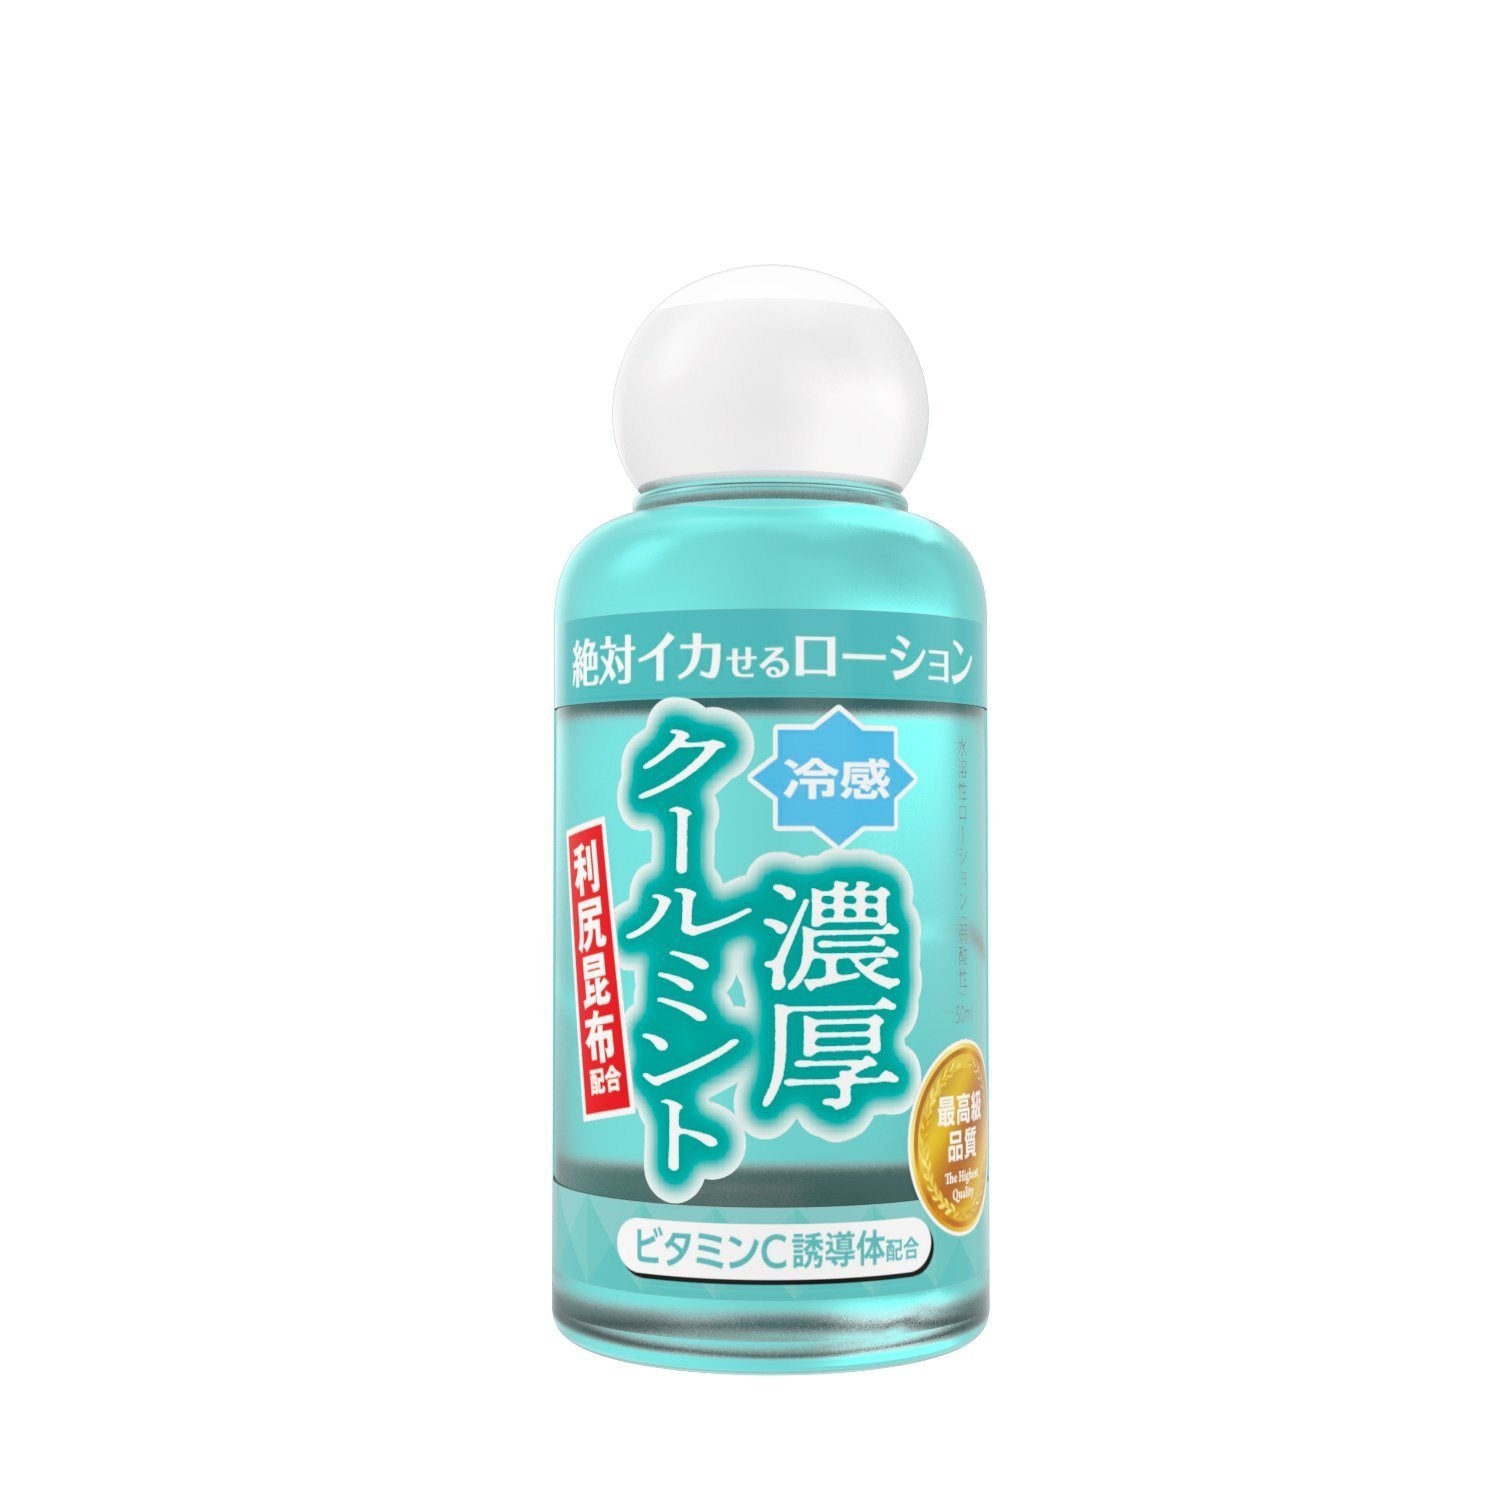 SSI JAPAN 絕對高潮特厚冰涼薄荷型水性潤滑液 50 毫升 潤滑液 購買